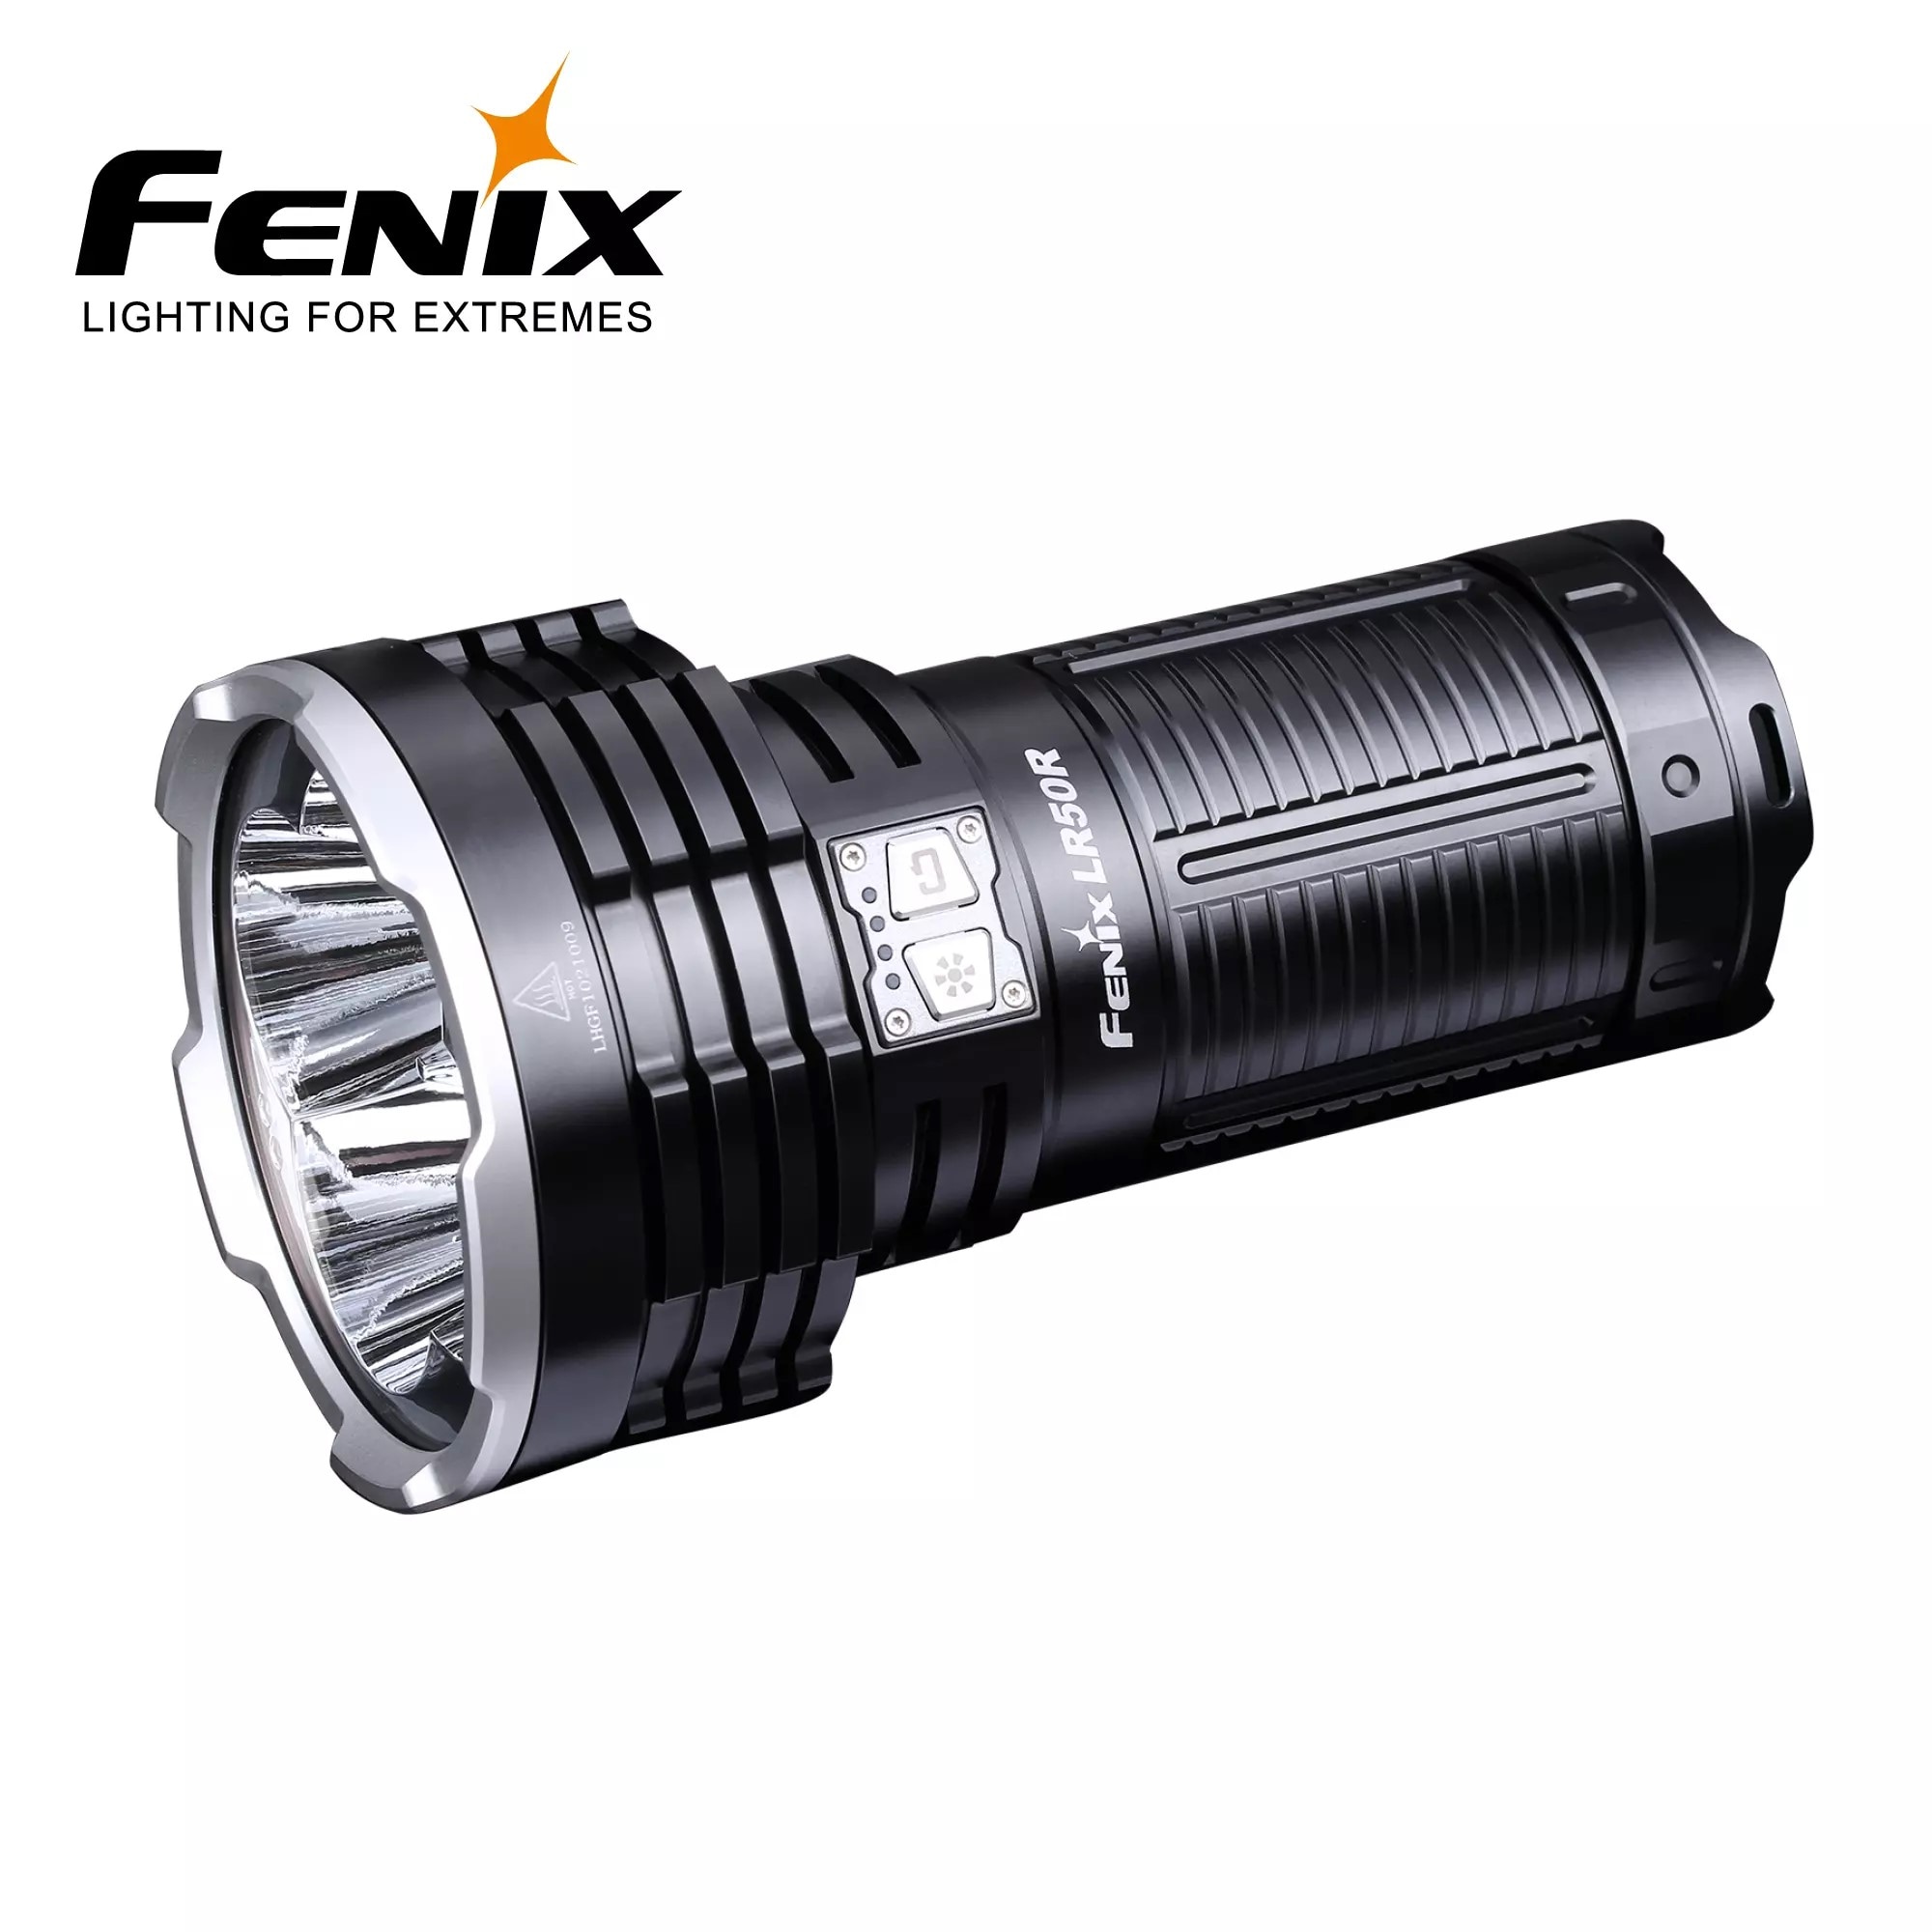 FENIX LR50R 12000lm